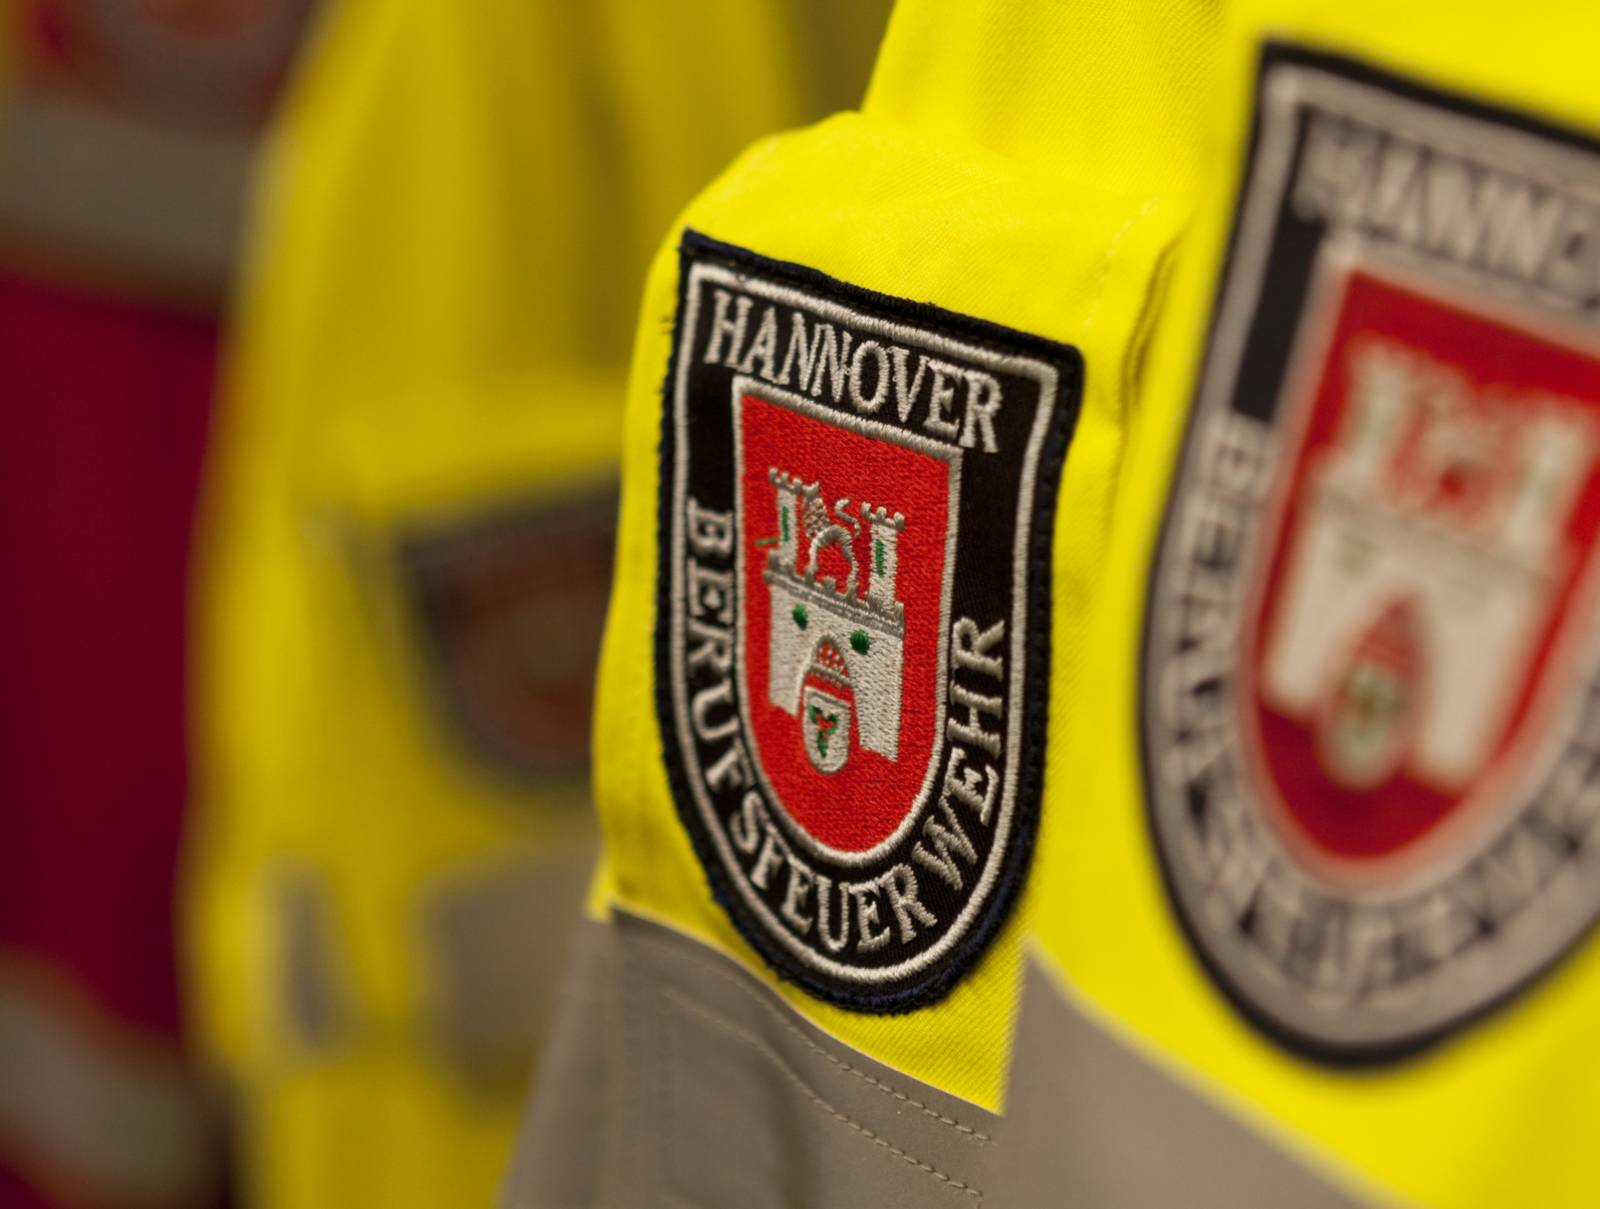 Abzeichen der Feuerwehr Hannover